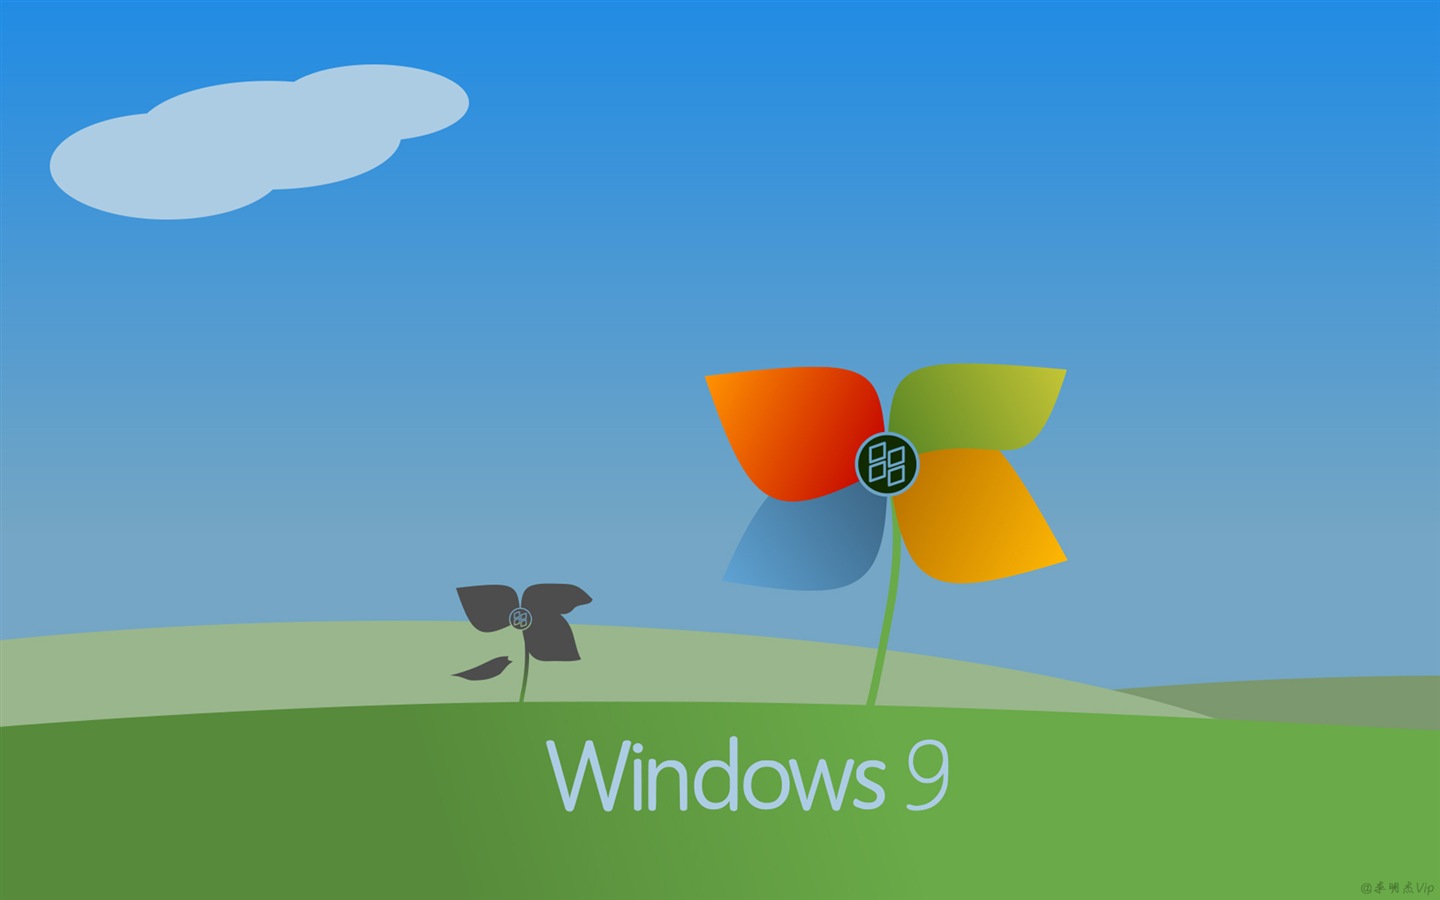 微软 Windows 9 系统主题 高清壁纸5 - 1440x900